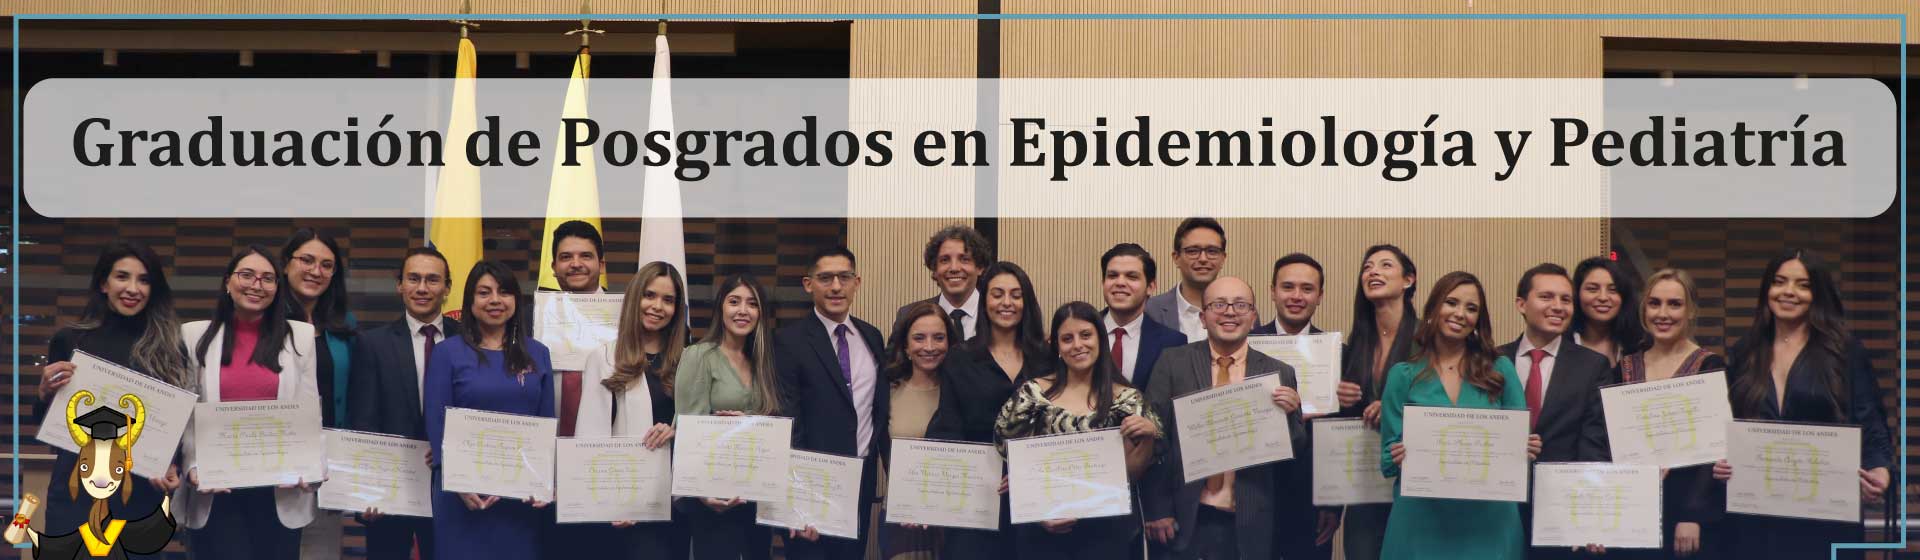 Graduación de Posgrados en Epidemiología y Pediatría